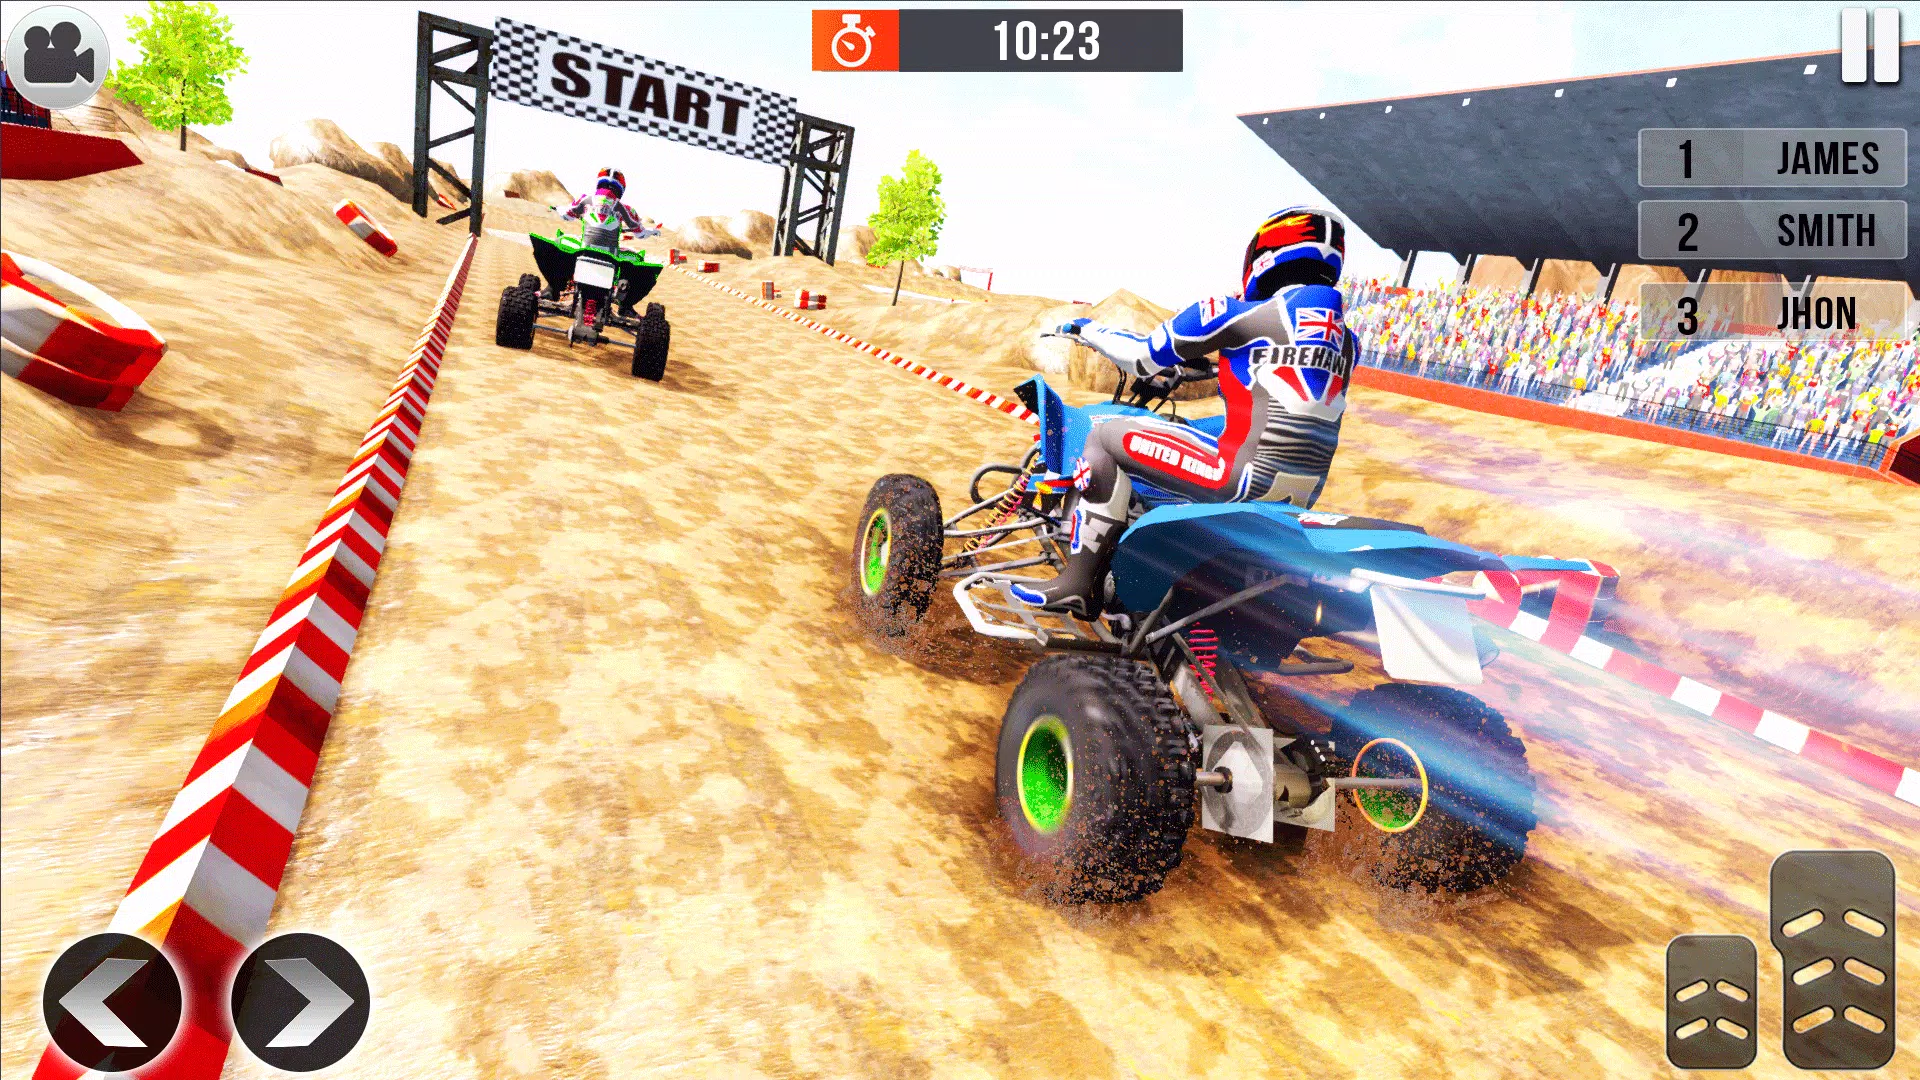 onderdelen eerste medeleerling Off Road Quad Bike Racing Game APK voor Android Download